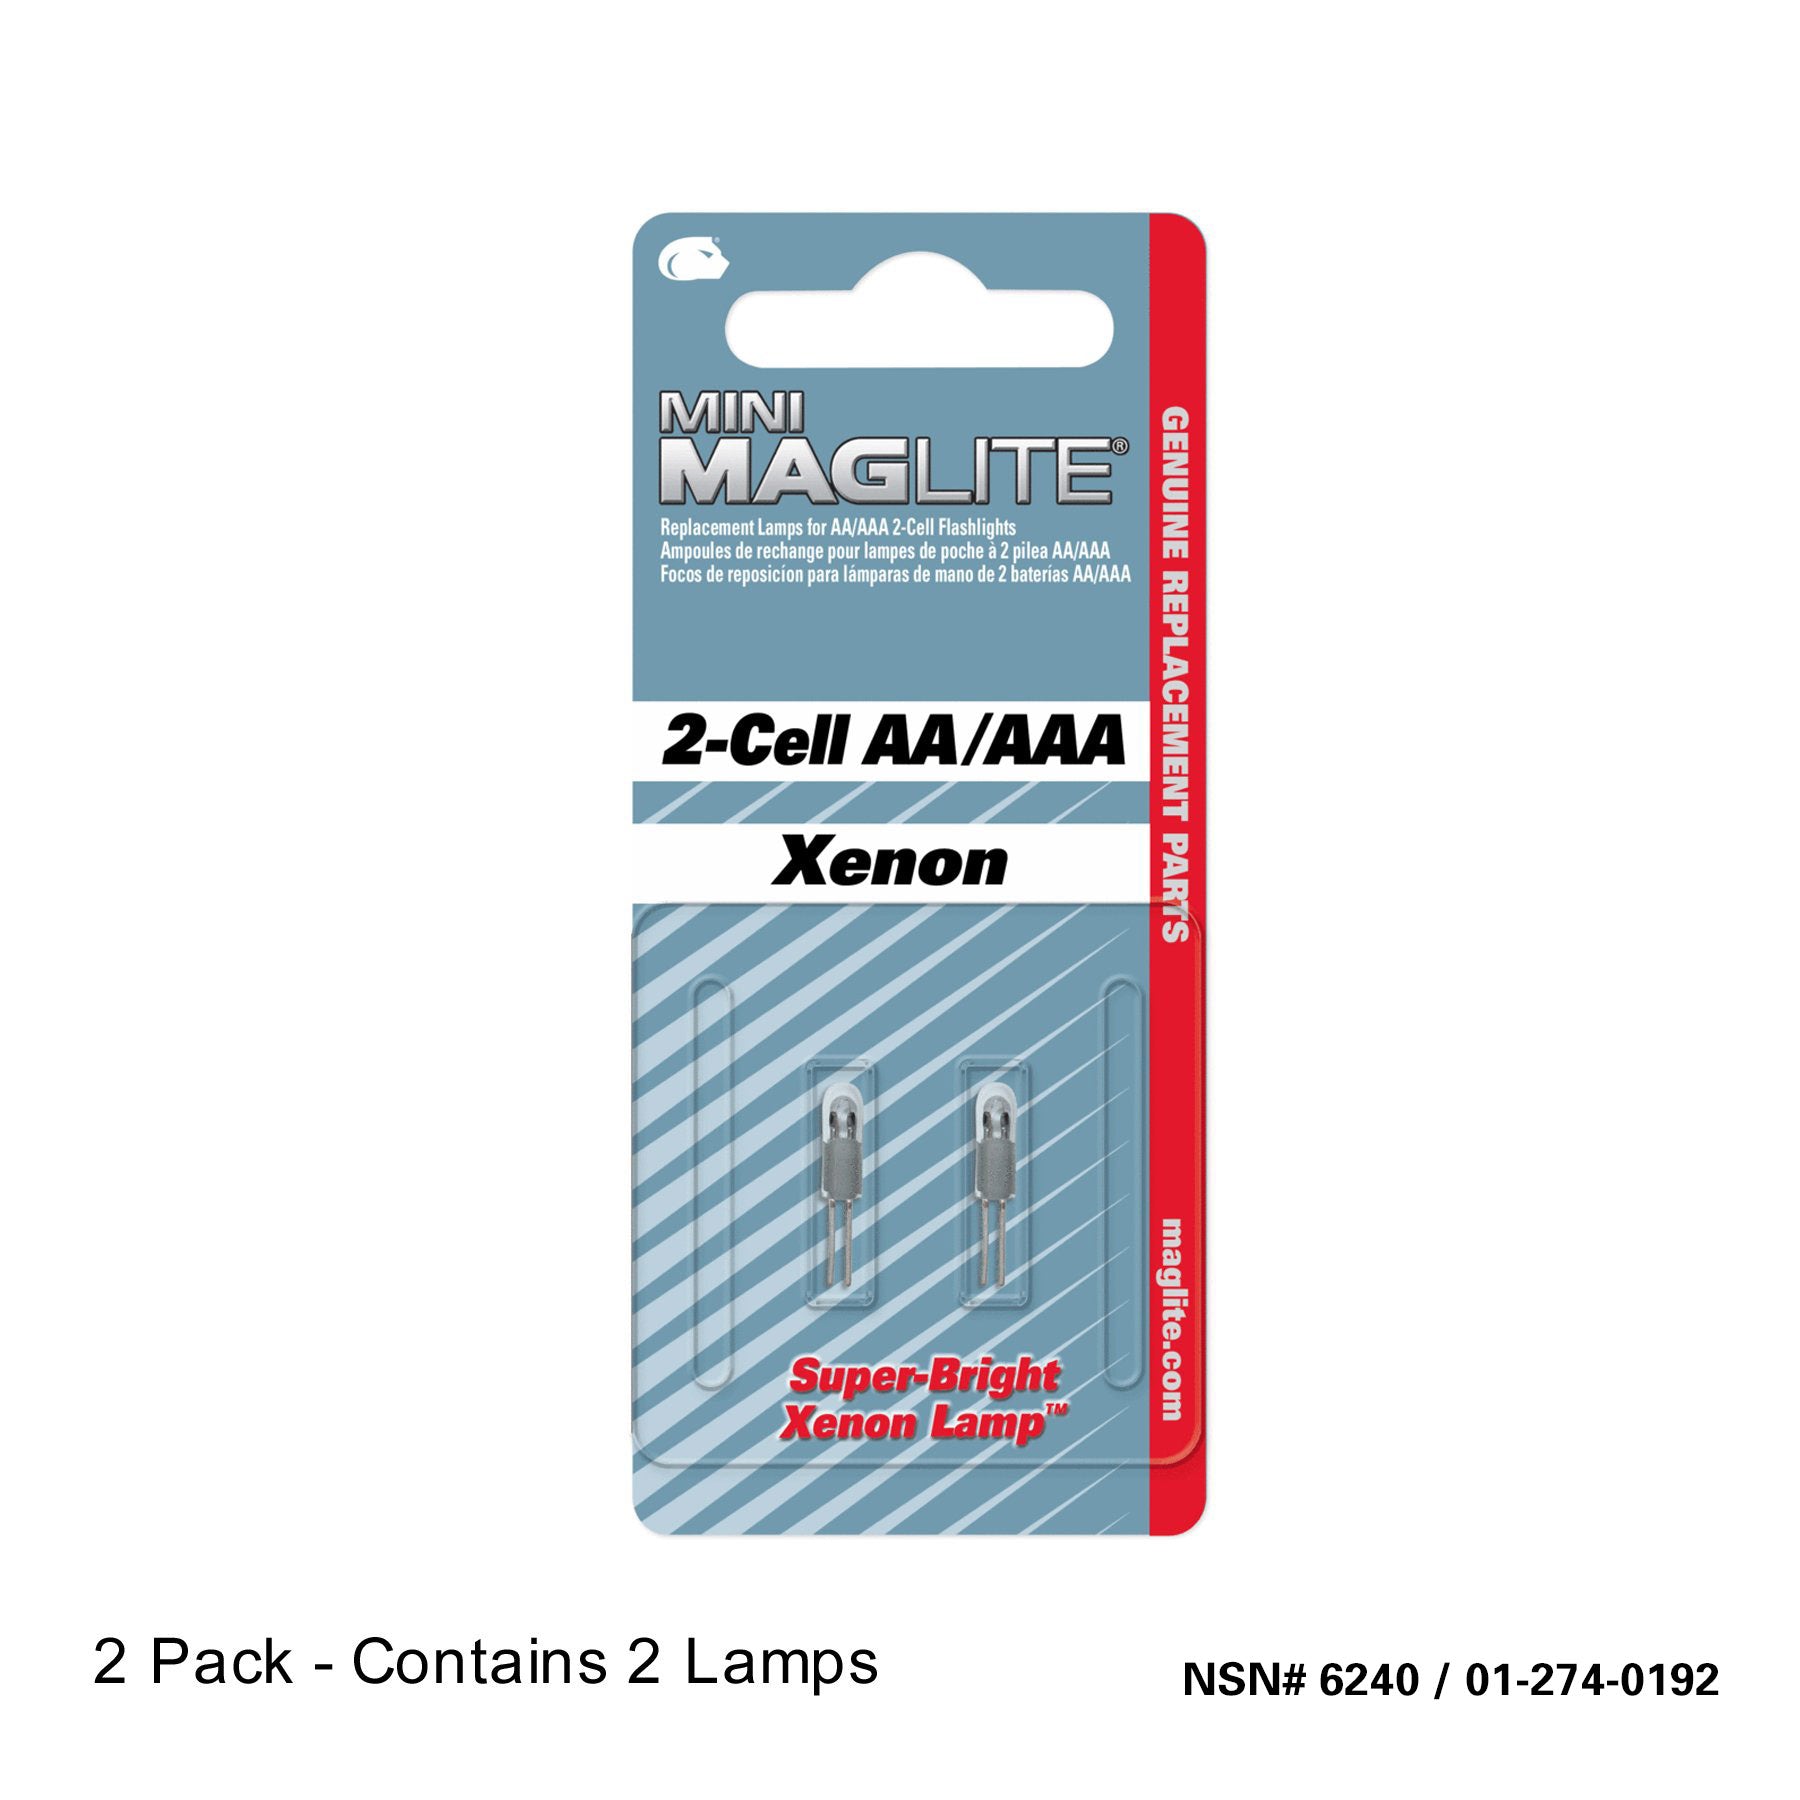 Replacement Xenon Lamp-Bulb for Mini Maglite Flashlight